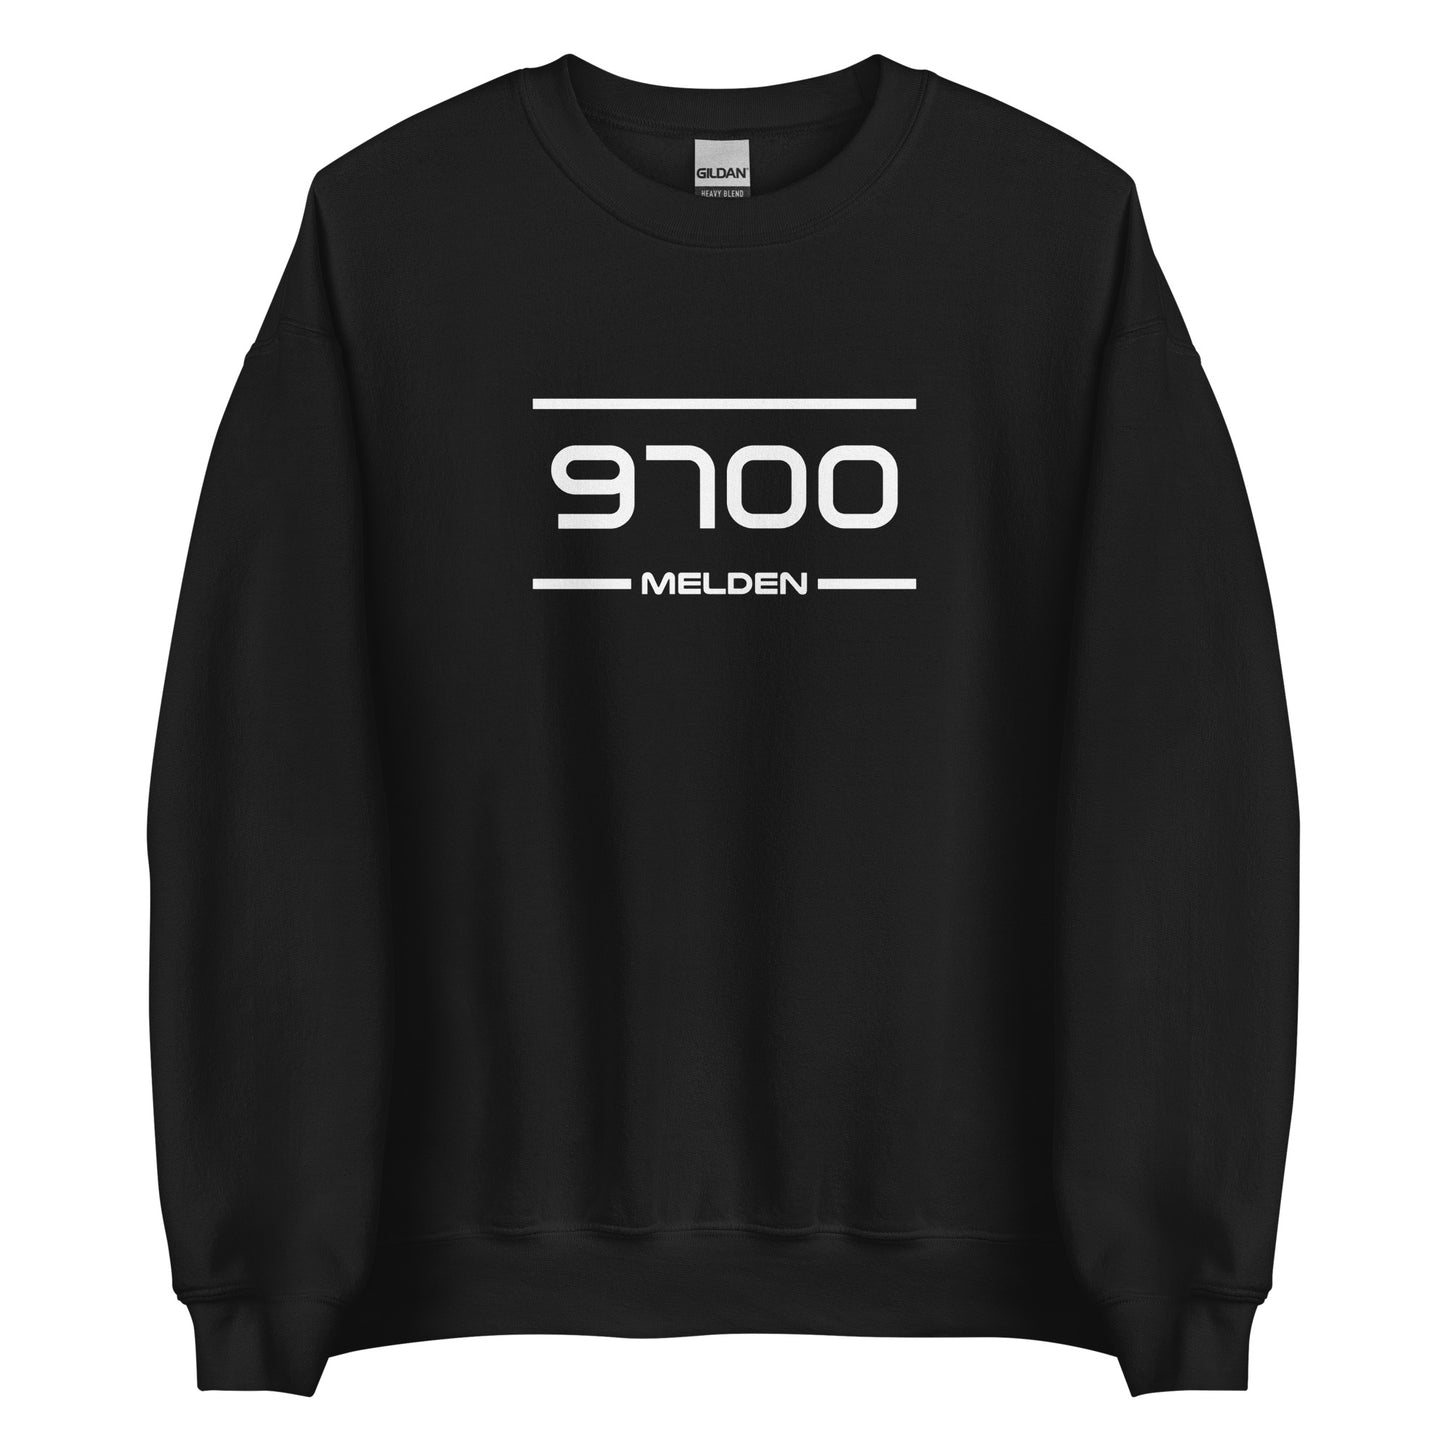 Sweater - 9700 - Melden (M/V)